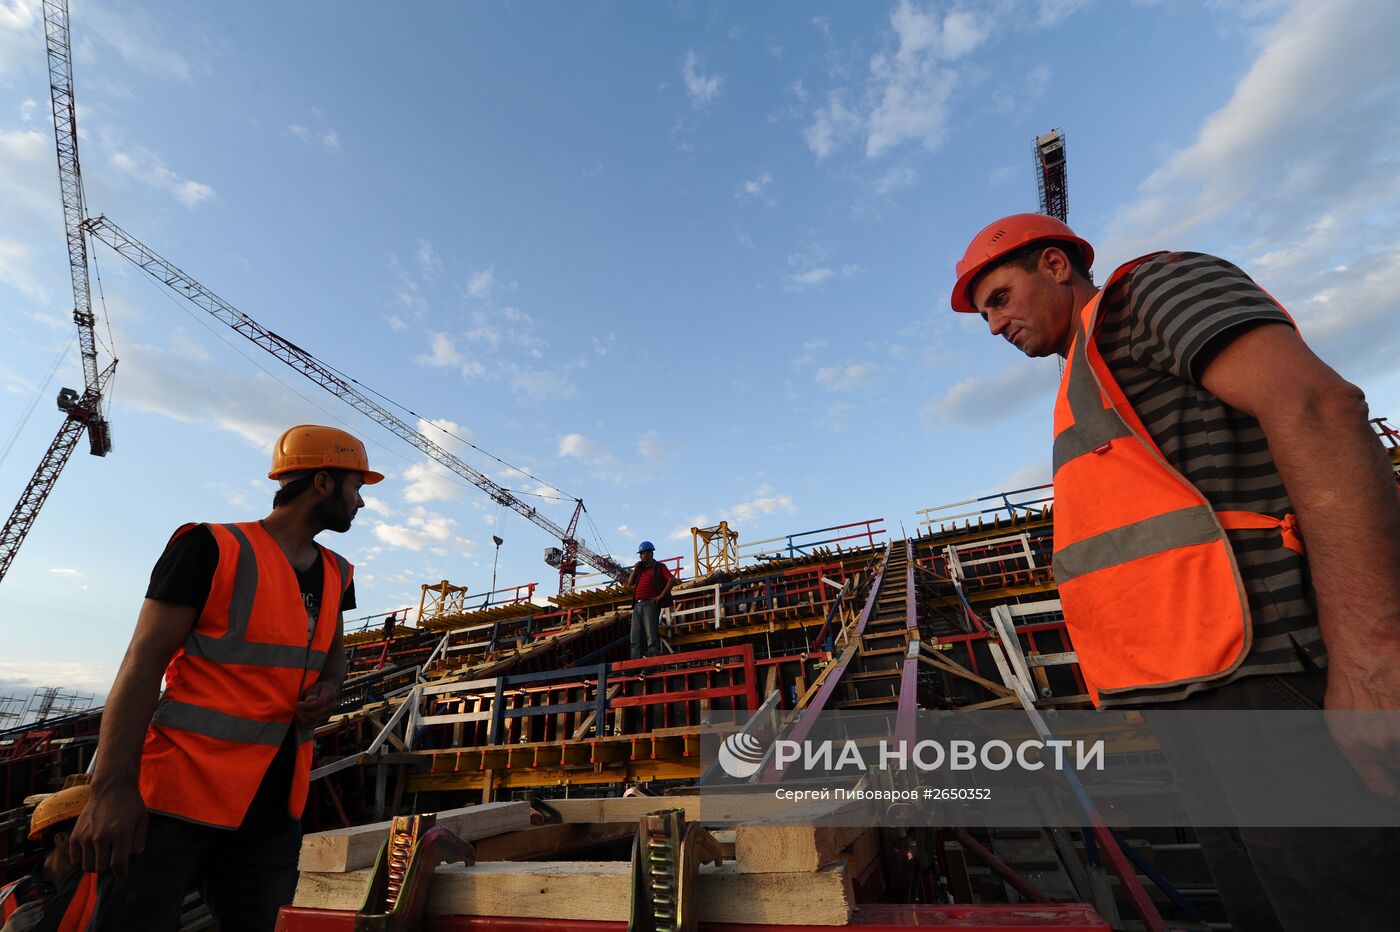 Строительство стадиона "Ростов-Арена"